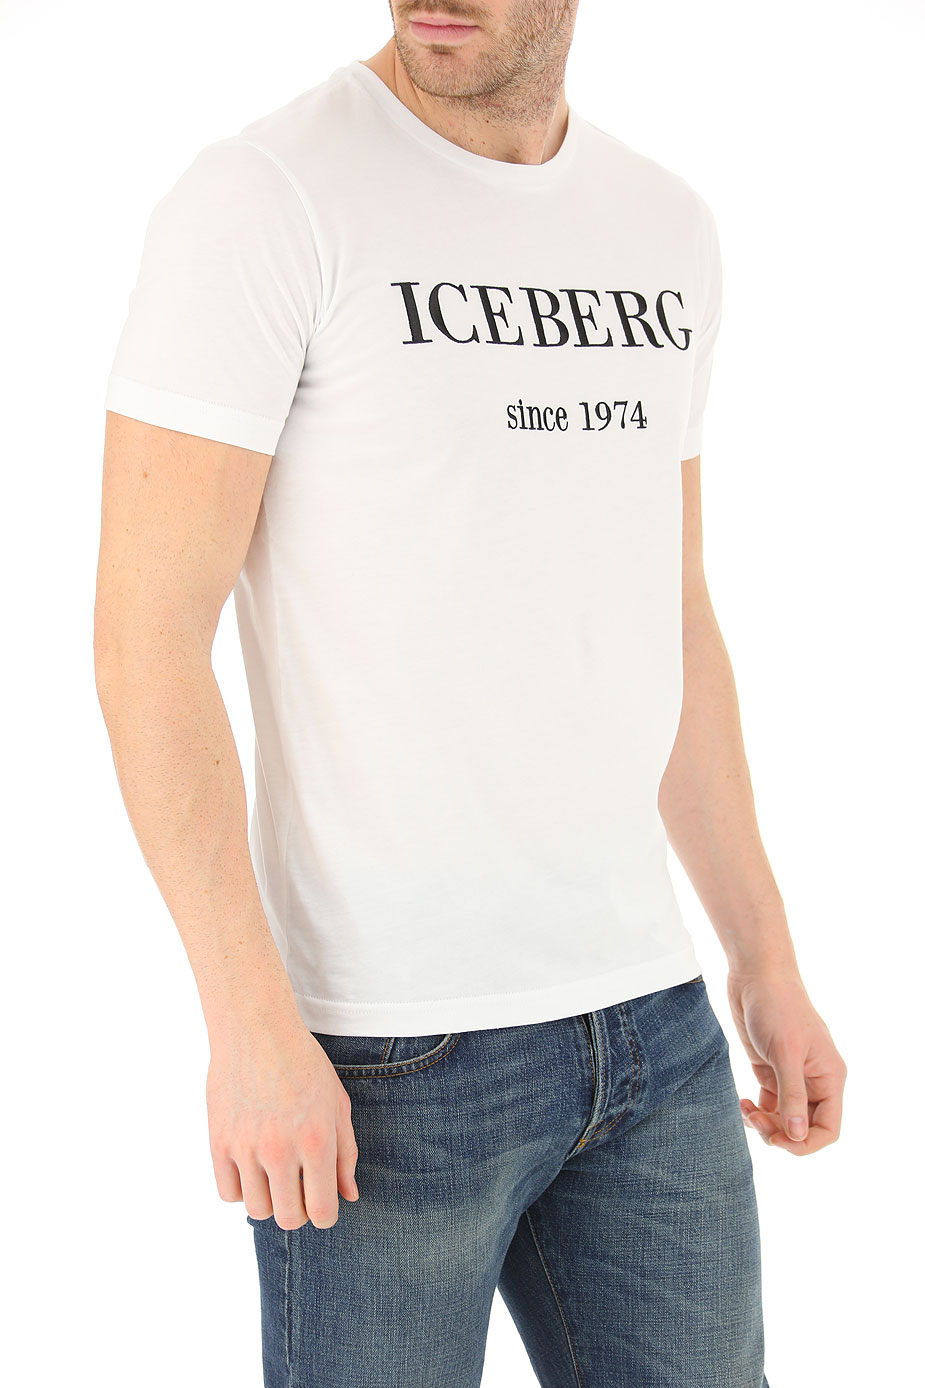 iceberg clothing store